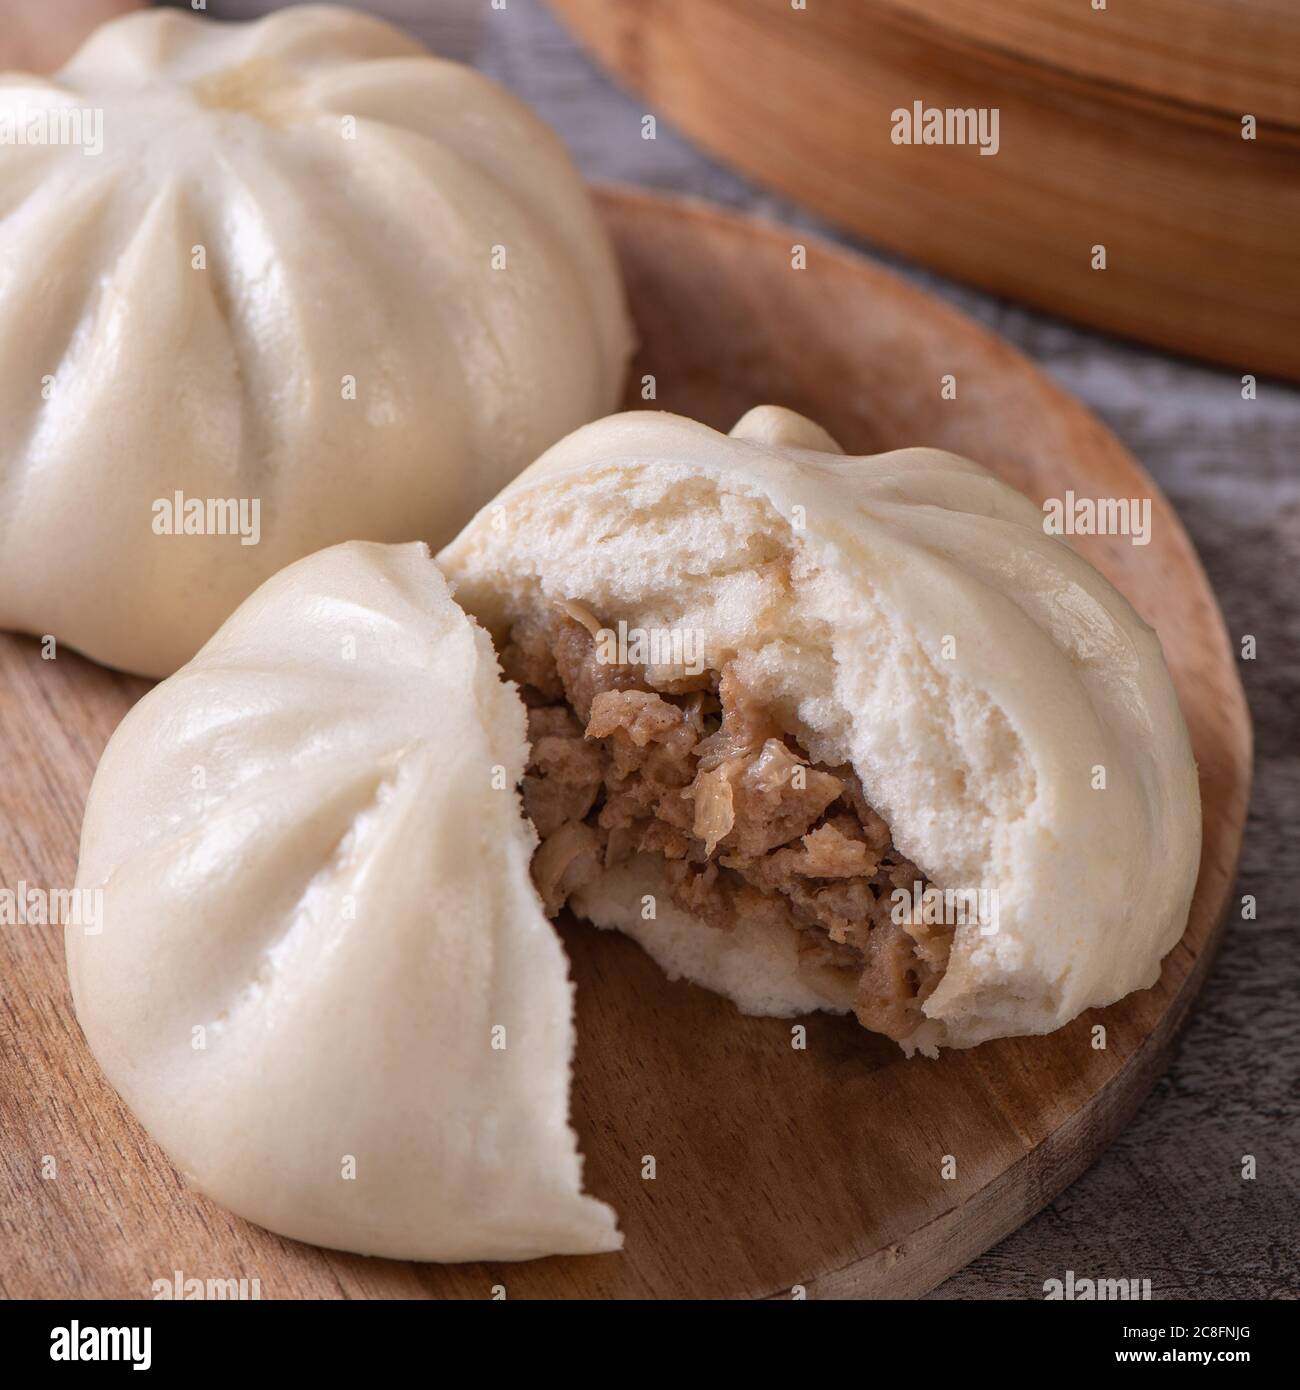 Köstliche Baozi, chinesische gedünstetes Fleisch Brötchen ist bereit, auf  Servierplatte und Dampfgarer, close up, kopieren Raum Produkt  Design-Konzept essen Stockfotografie - Alamy